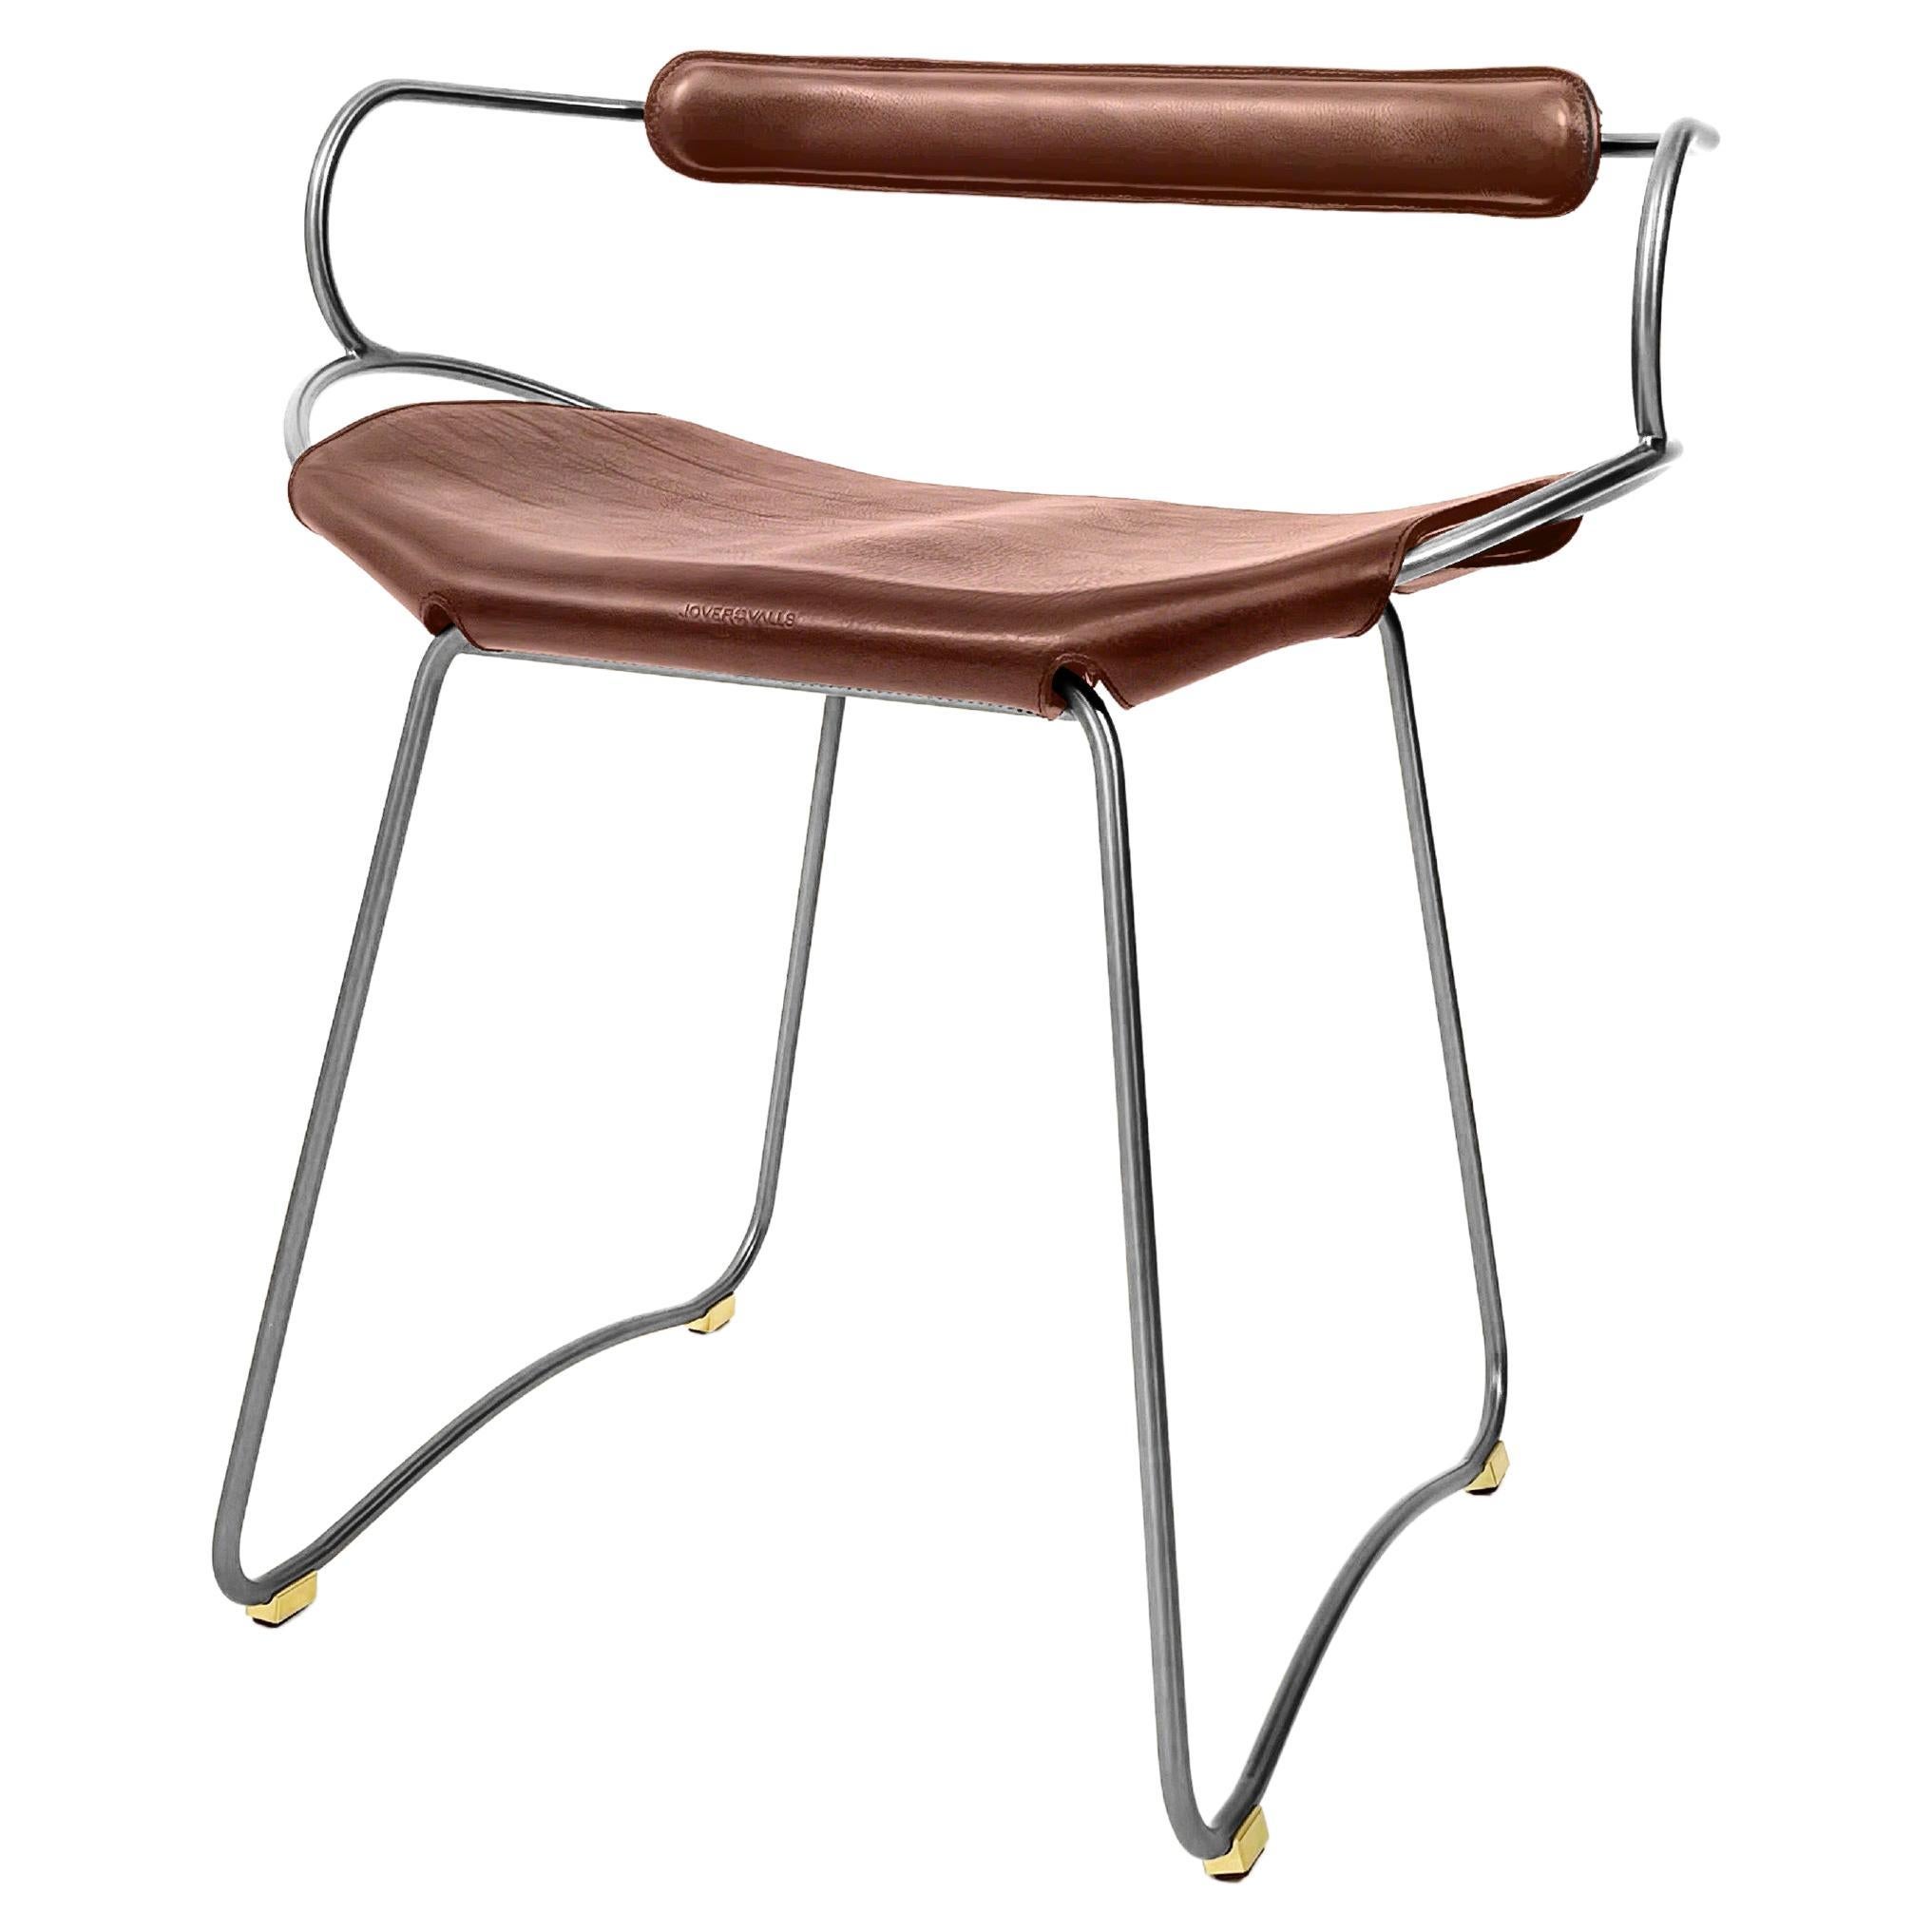 Tisch Barhocker w. Rückenlehne aus Altsilber, Metall und cognacfarbenem Leder mit organischem Design